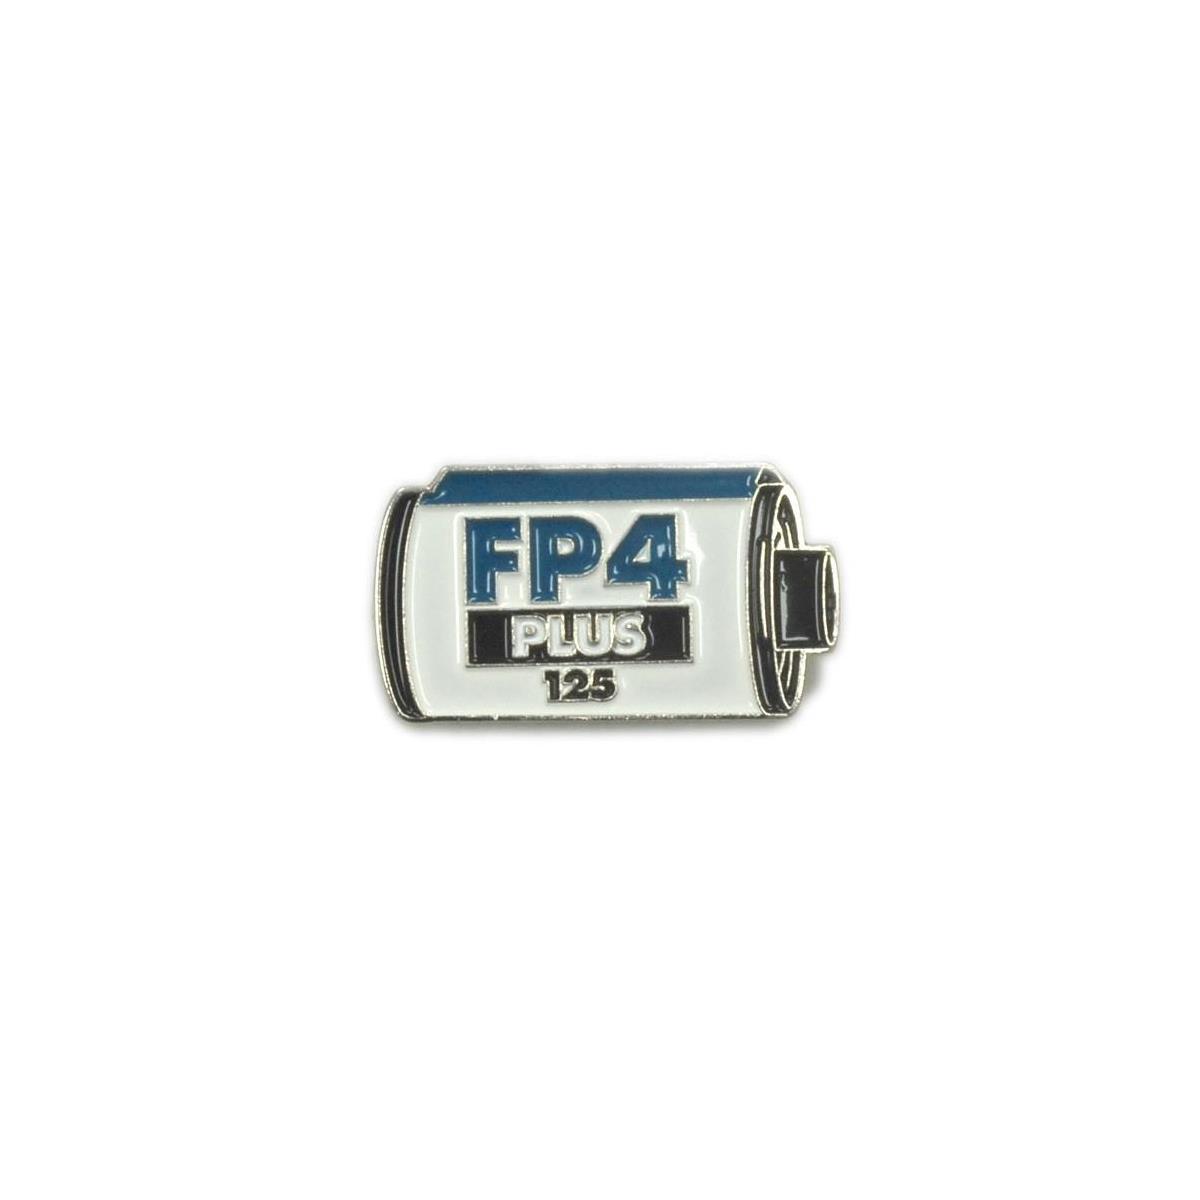 Image of Ilford FP4 Plus Metal Pin Badge